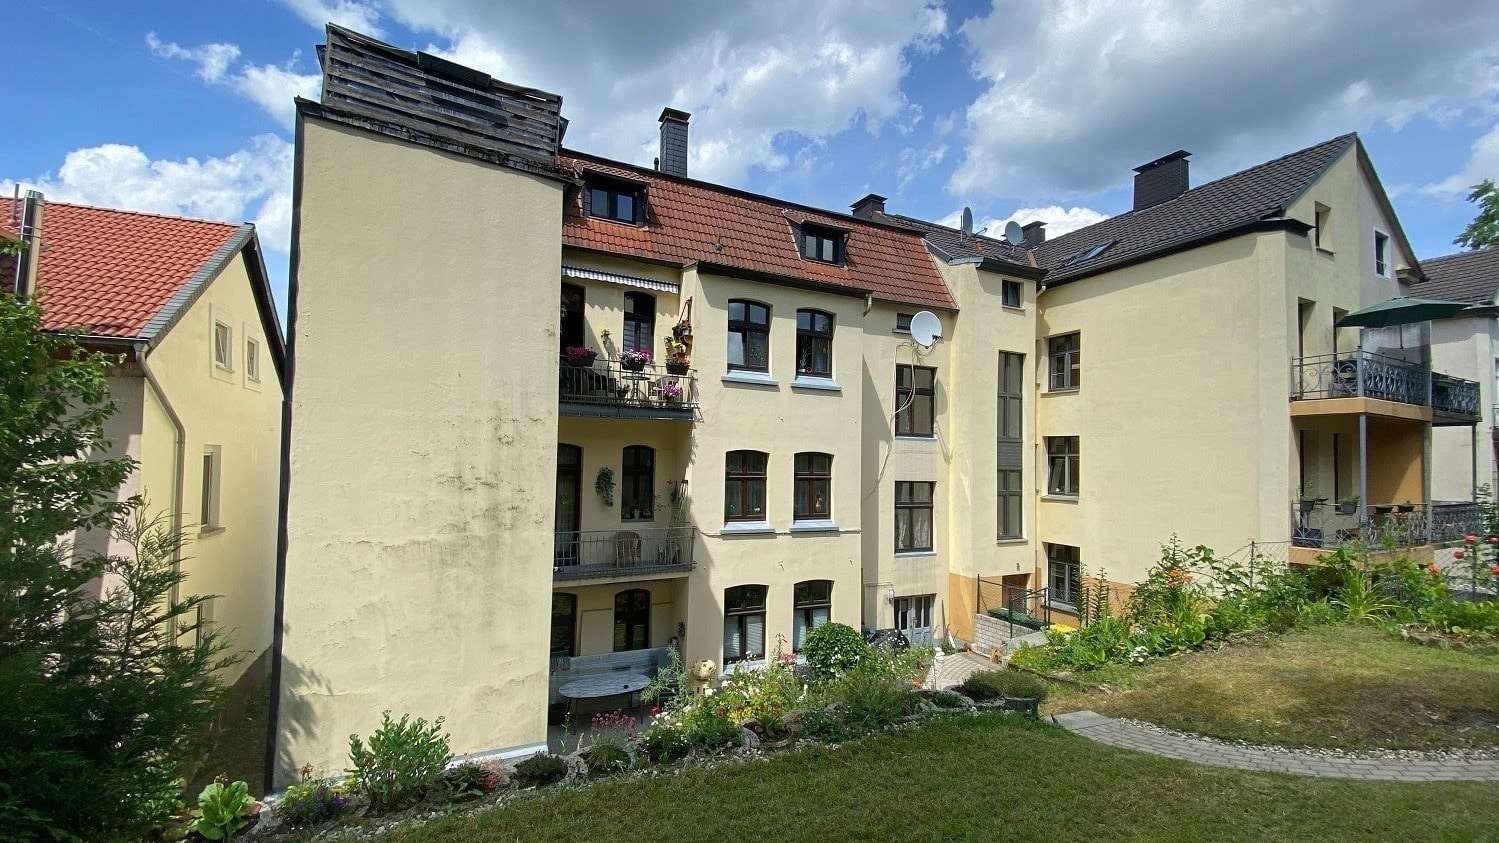 Hausansicht - Dachgeschosswohnung in 58511 Lüdenscheid mit 104m² kaufen